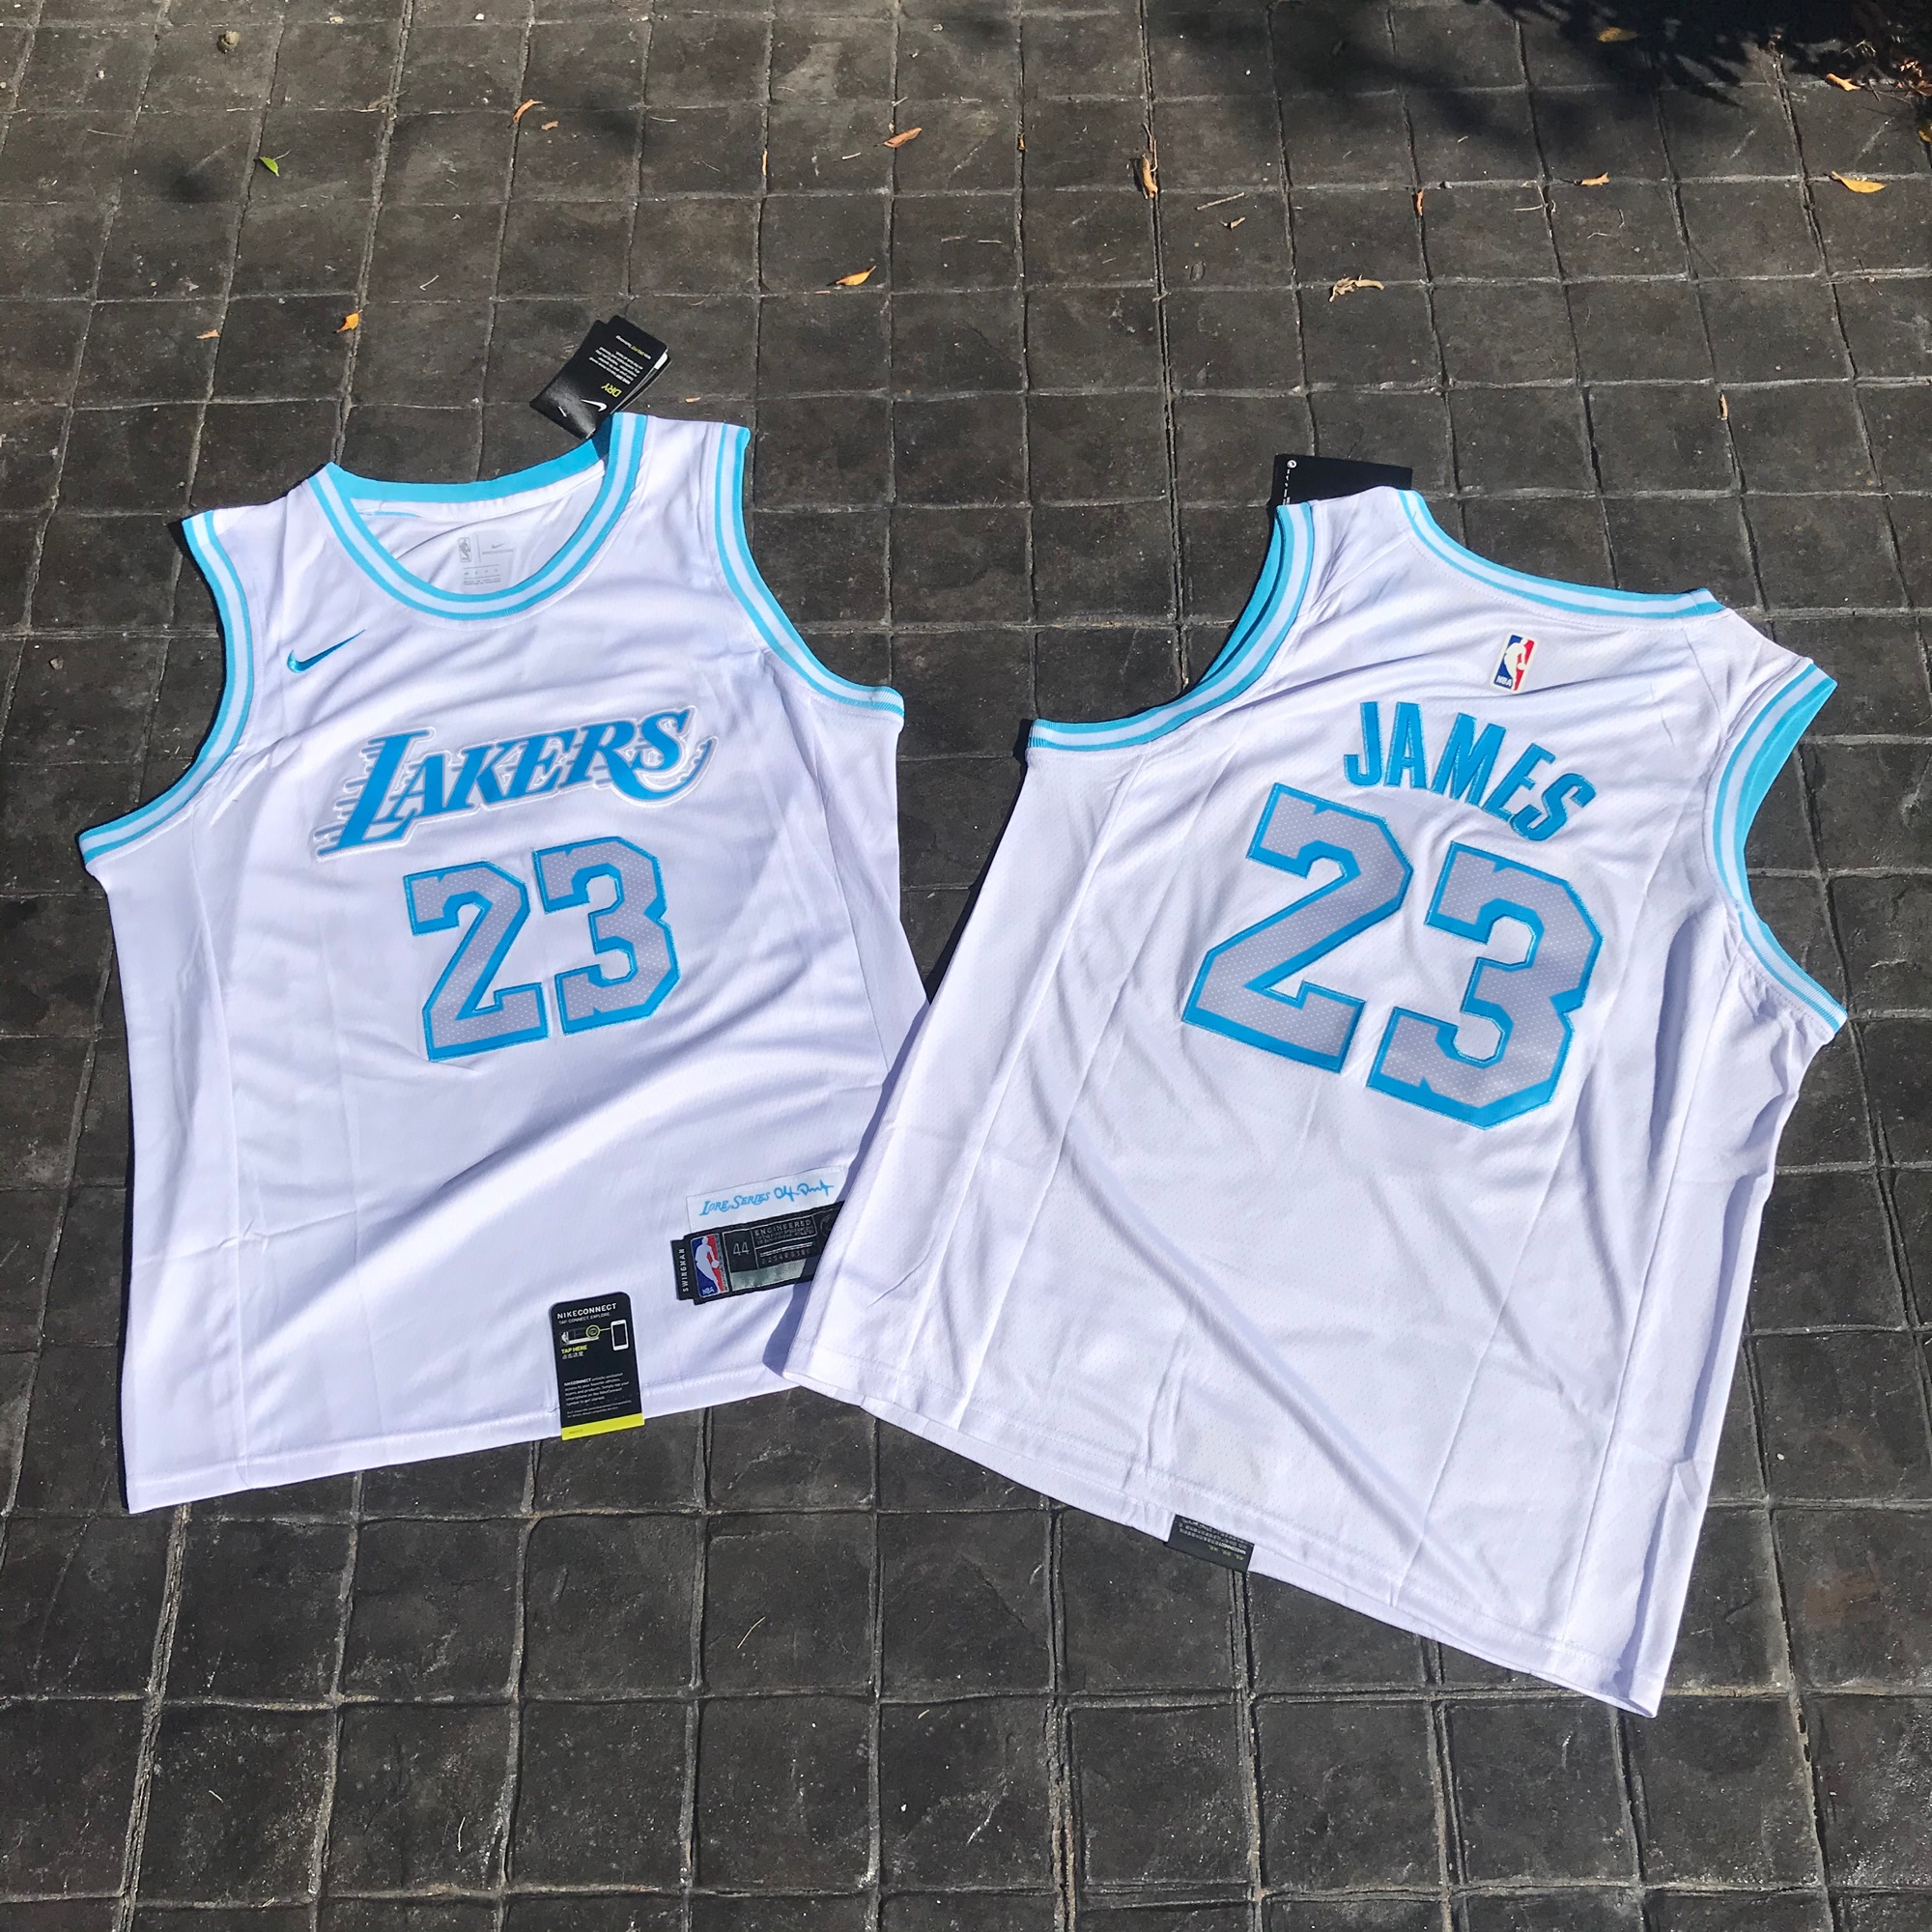 เสื้อบาสเกตบอล basketball jerseys(พร้อมจัดส่ง)#Lakers.james.23(snow)